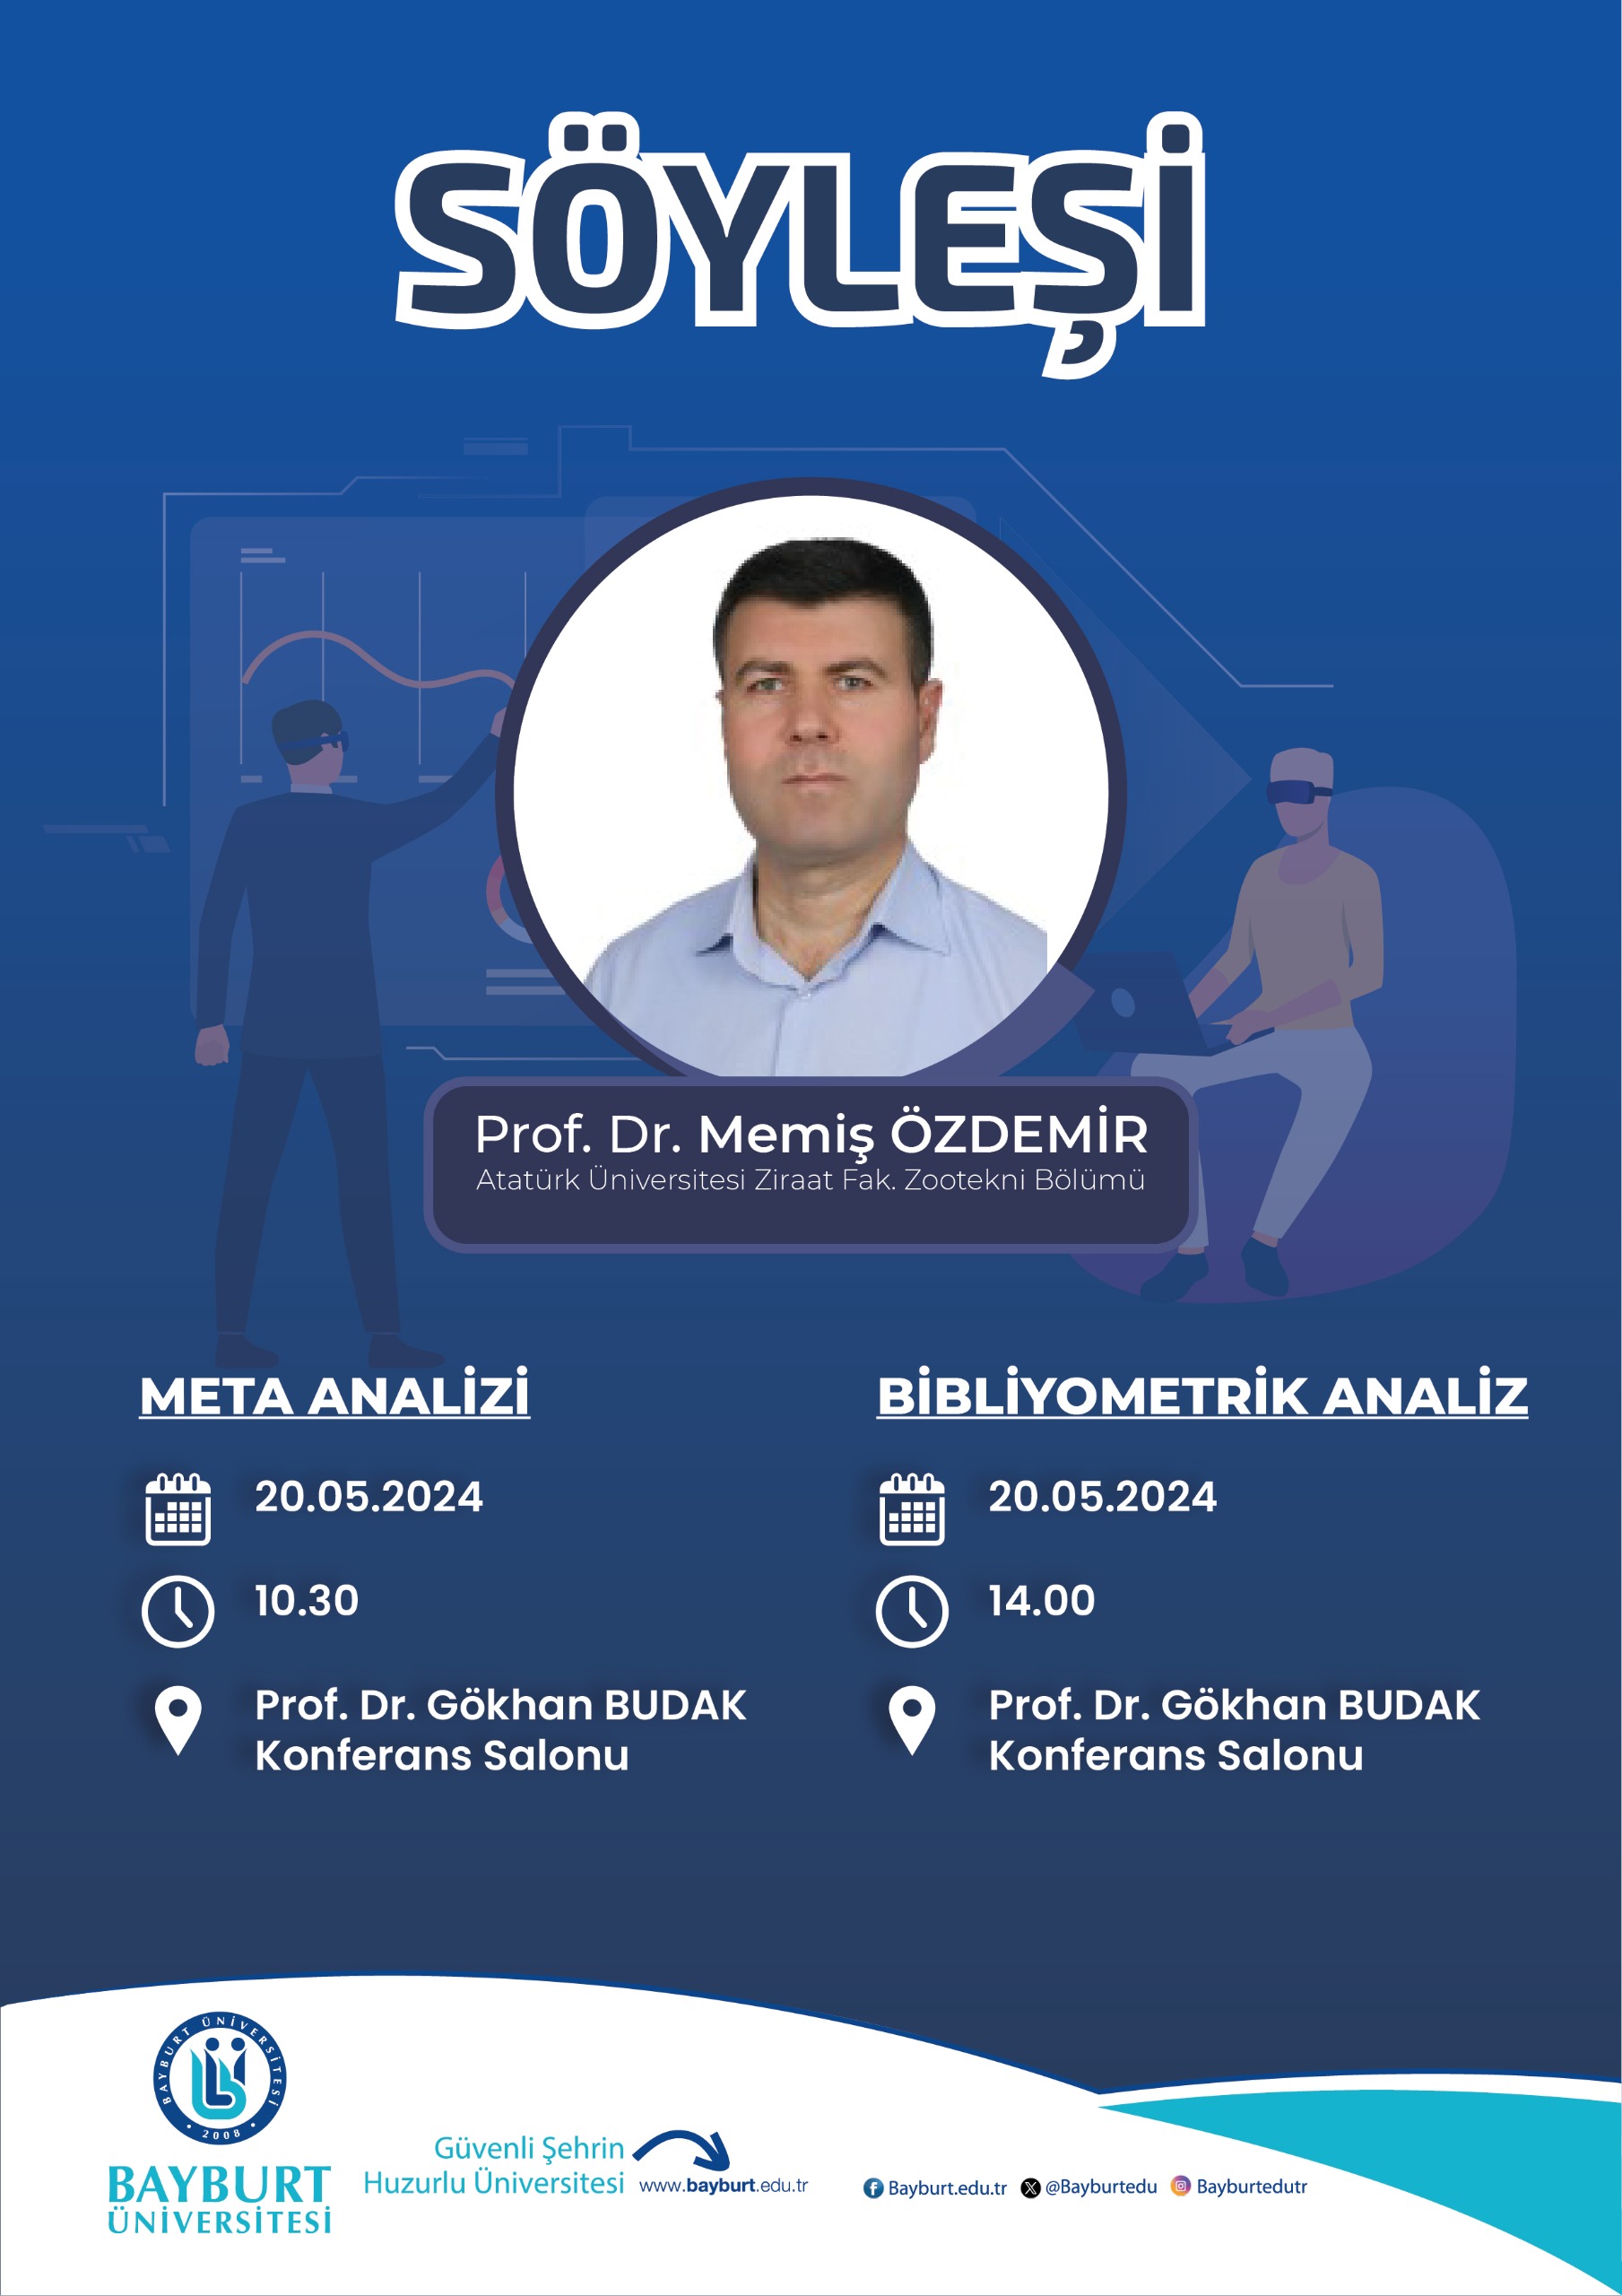 Prof. Dr. Memiş Özdemir ile Söyleşi